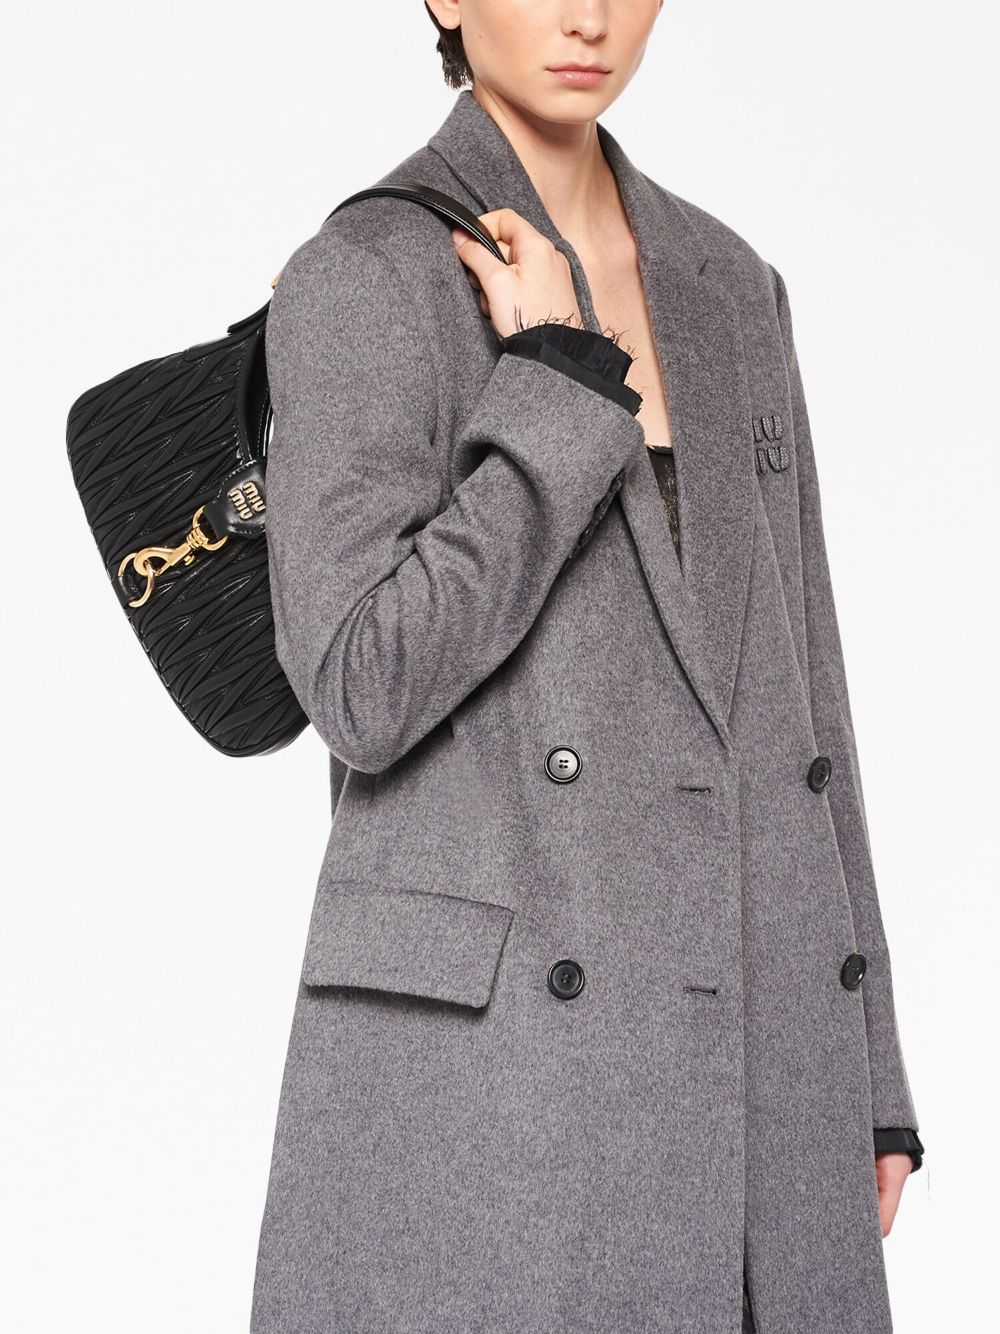 Miu Miu Cedar nappa leather Pocket shoulder bag